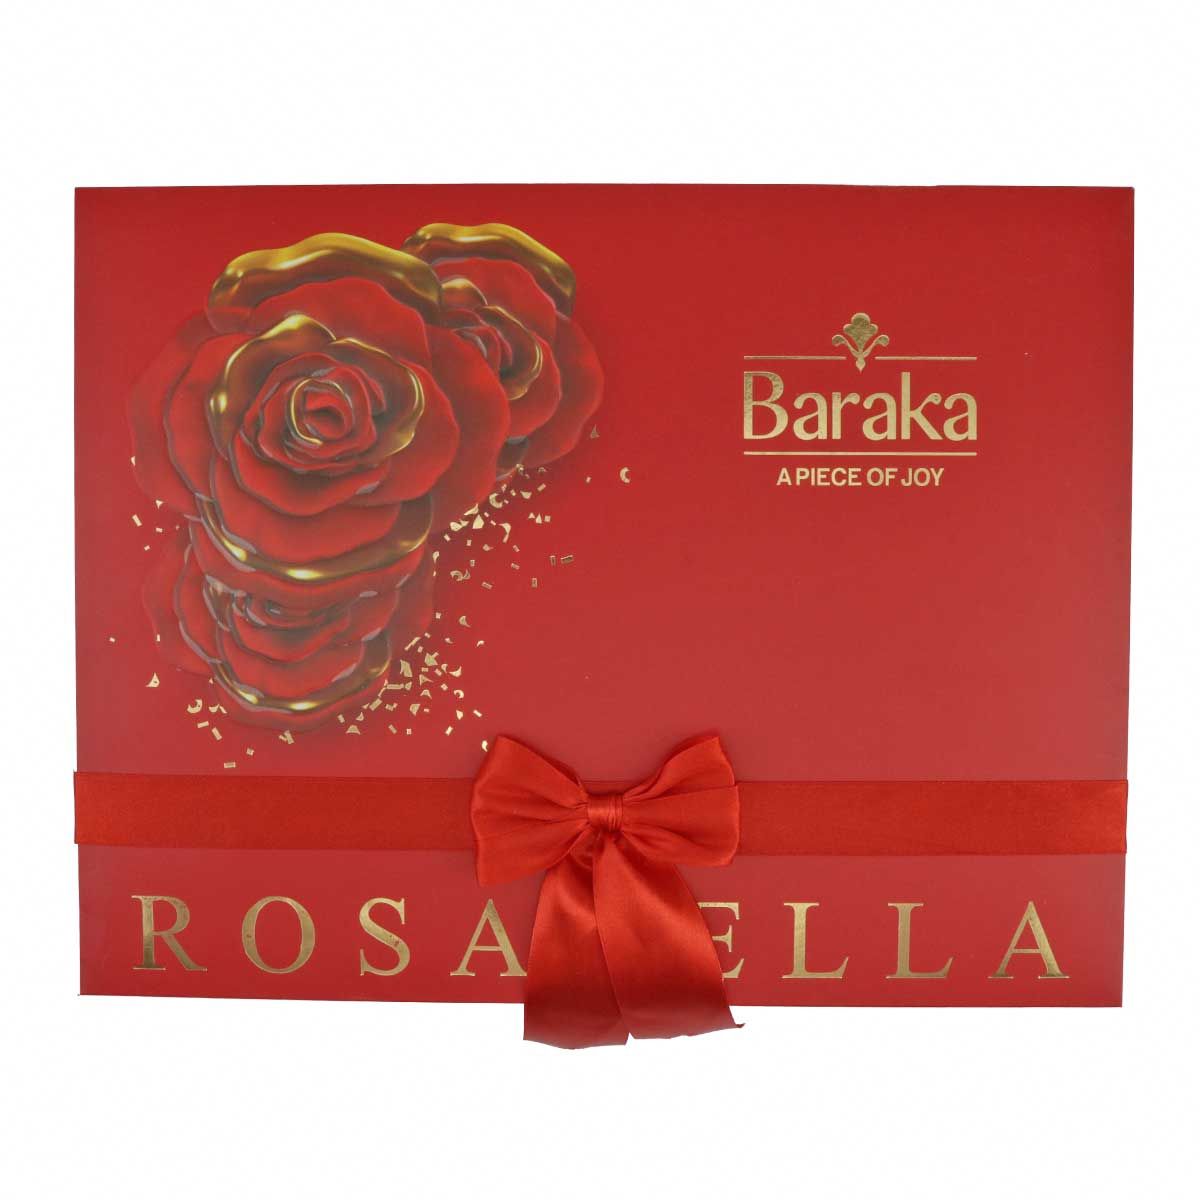 شکلات کادویی طرح رزابلا باراکا 156 گرمی